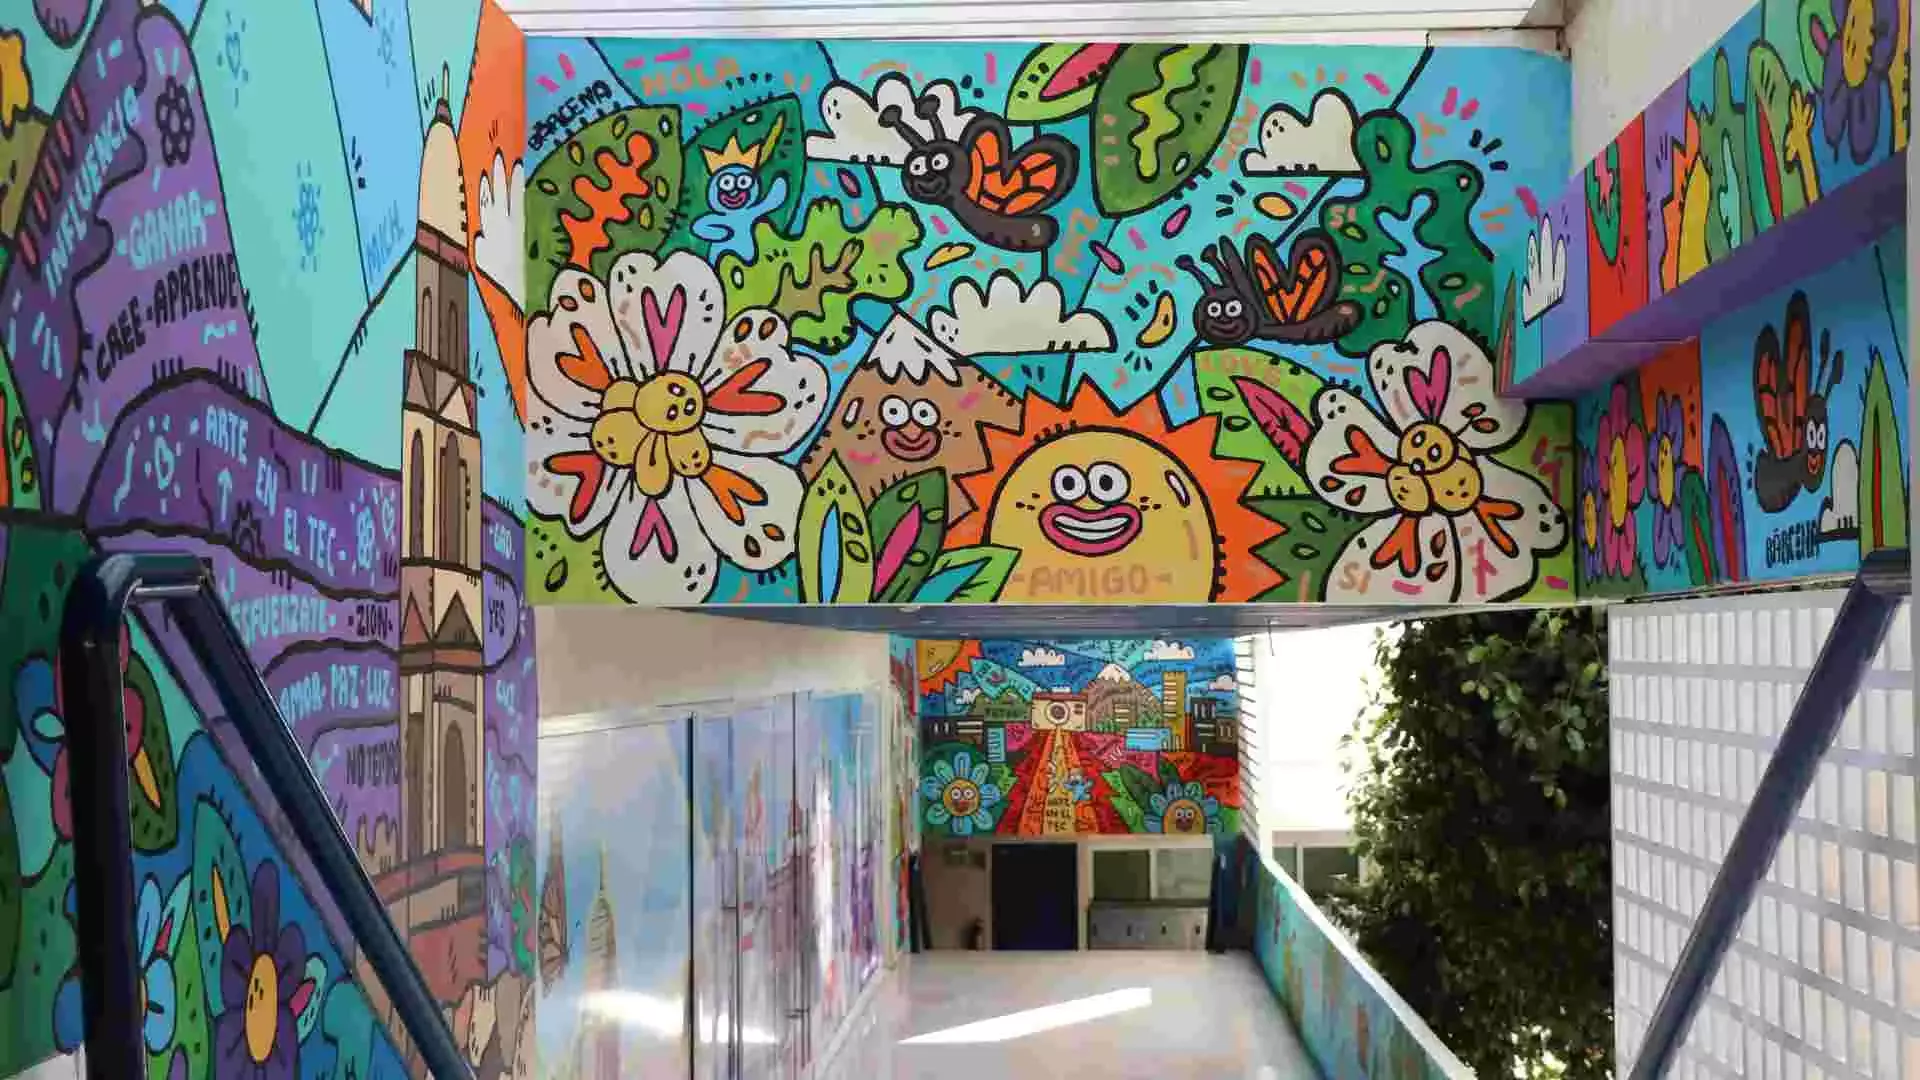 El artista incluyó elementos representativos de la ciudad de Morelia en múltiples partes del mural.